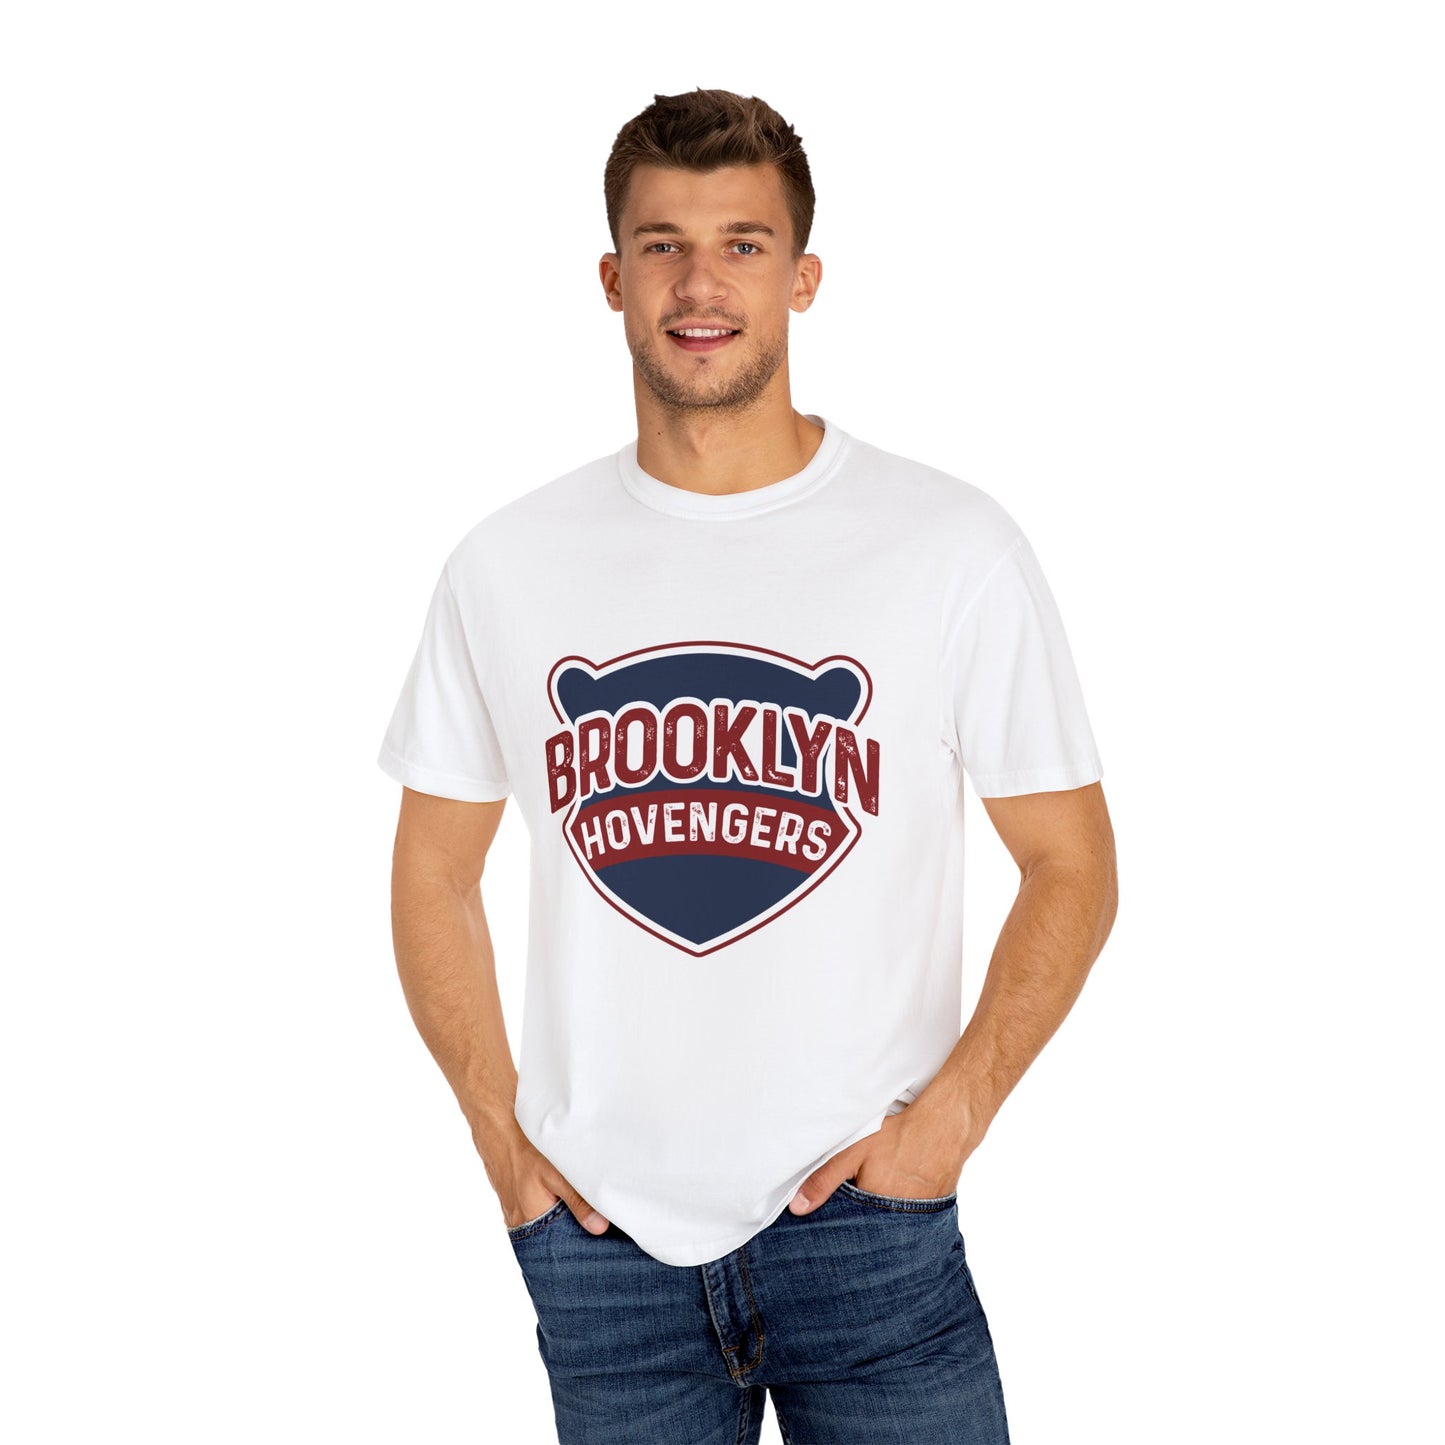 Brooklyn Hovengers T-shirt